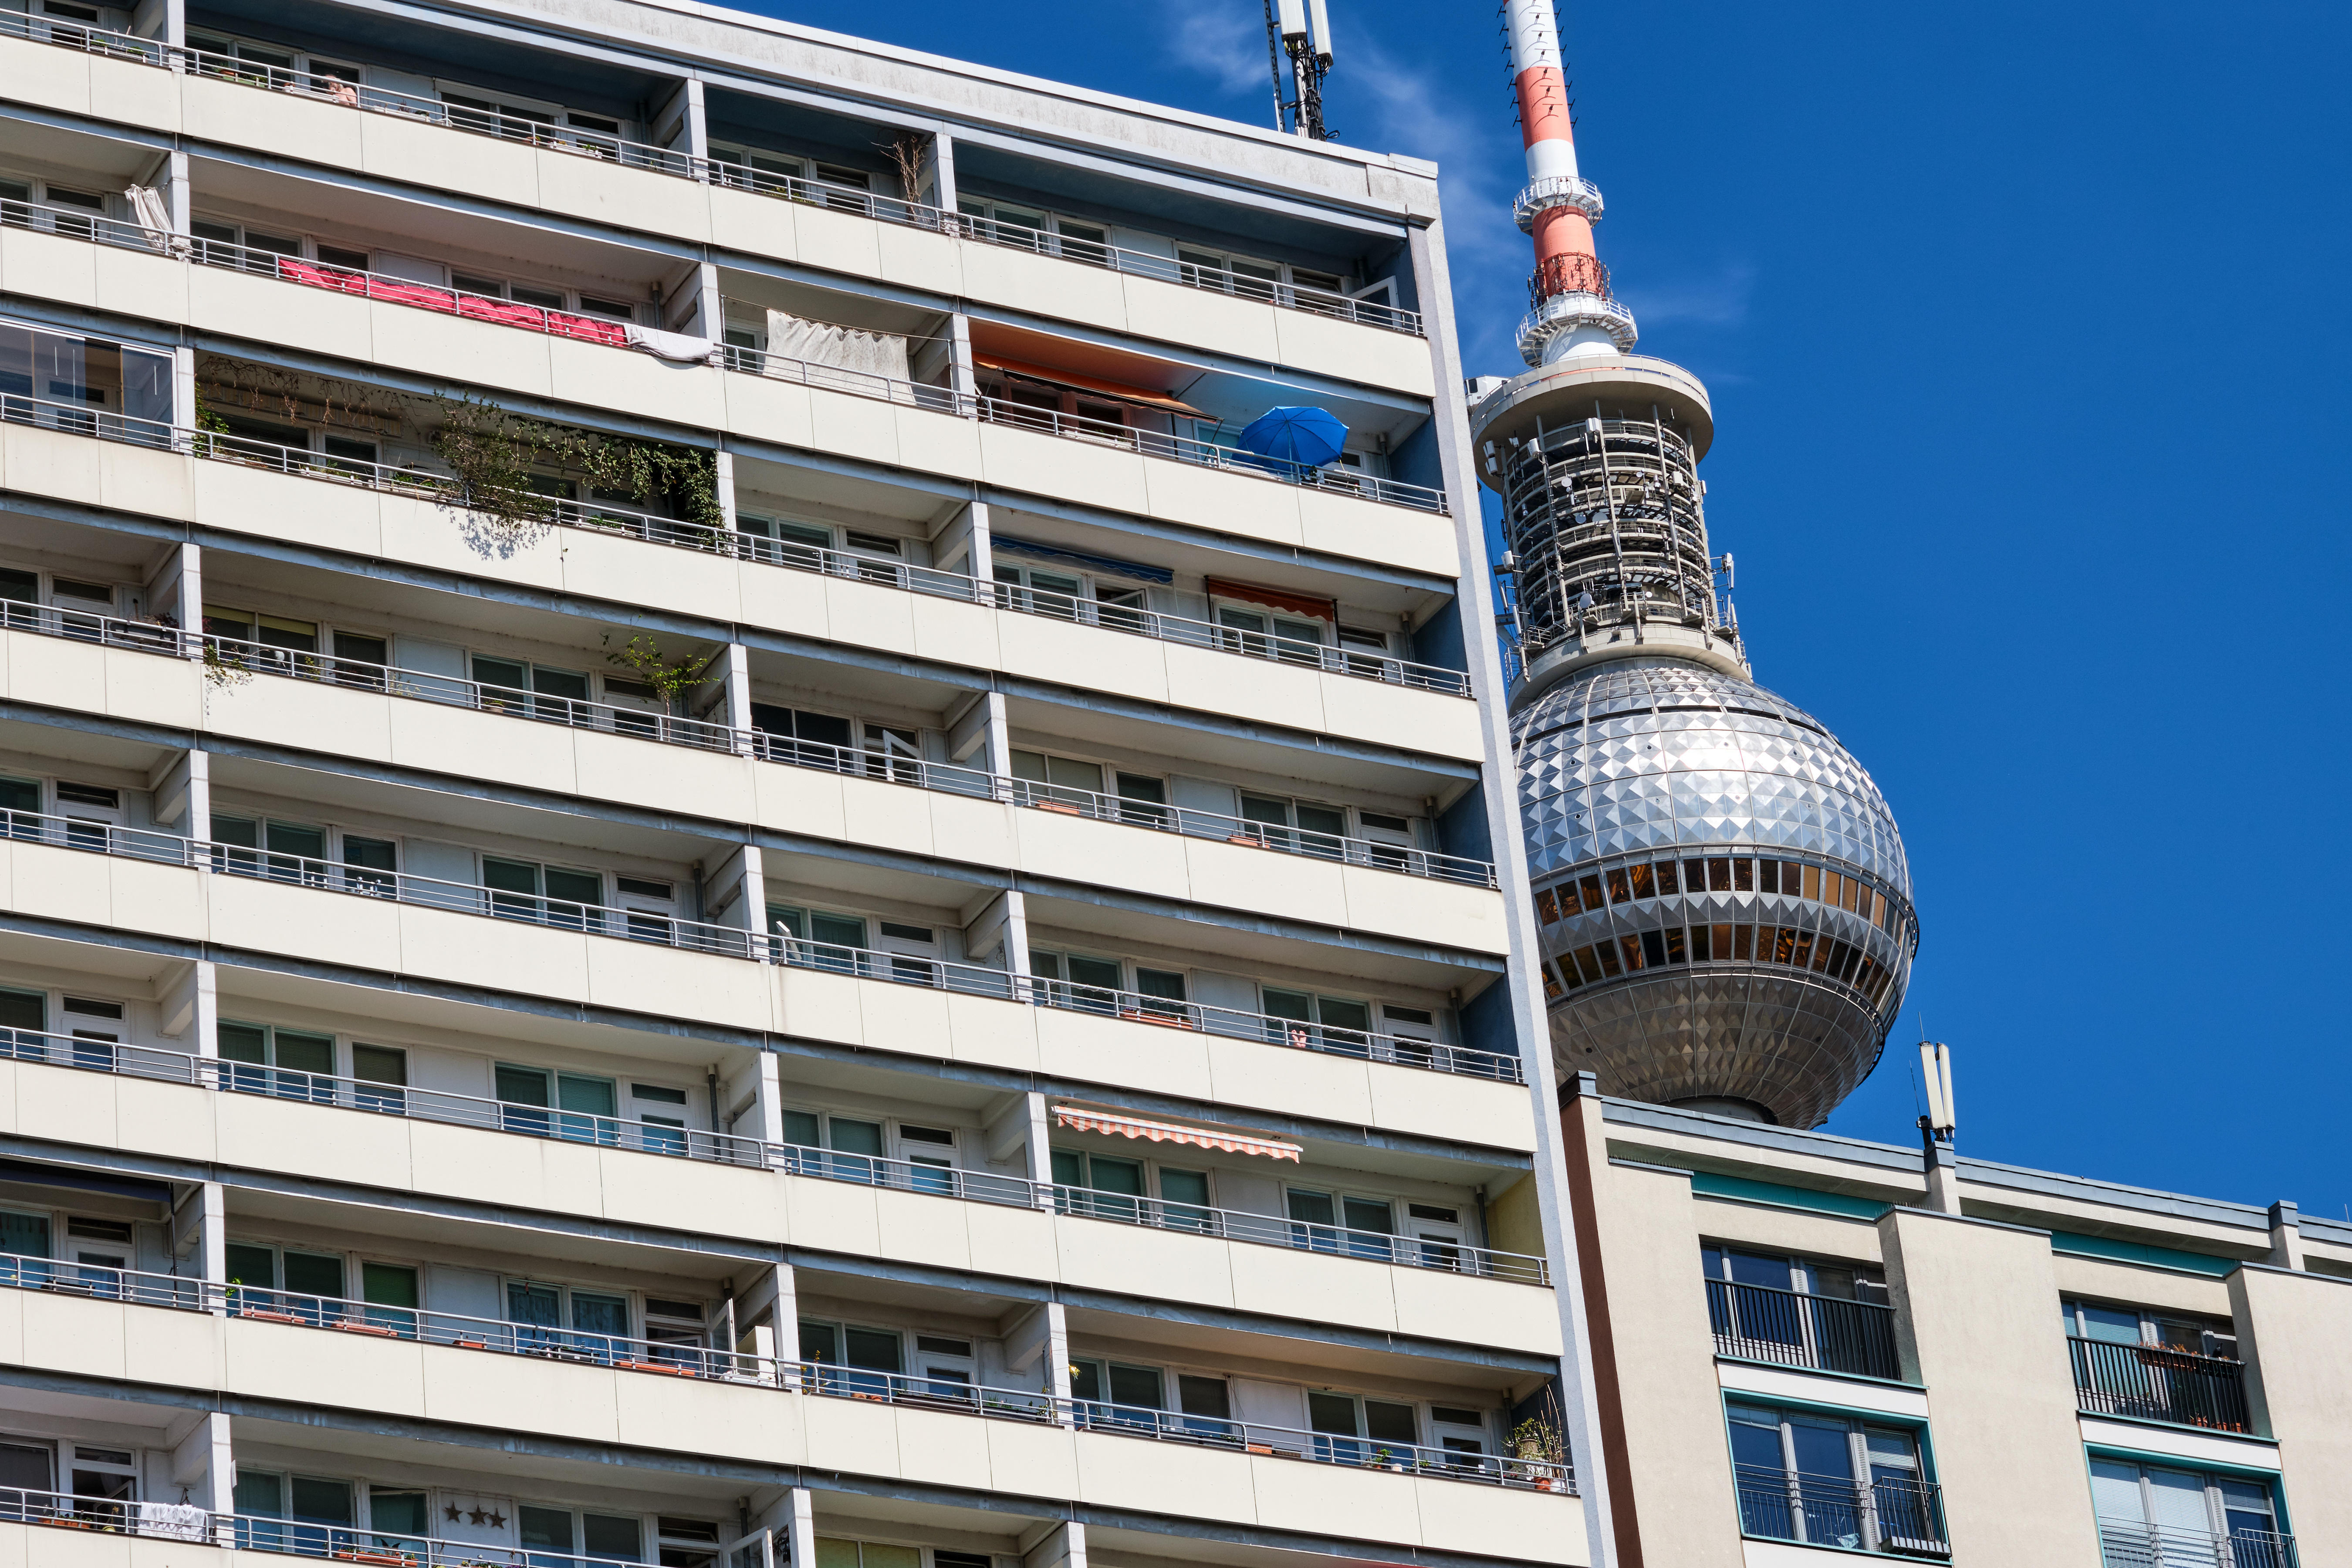 Sozialer Wohnungsbau mit dem Fernsehturm von Berlin im Hintergrund